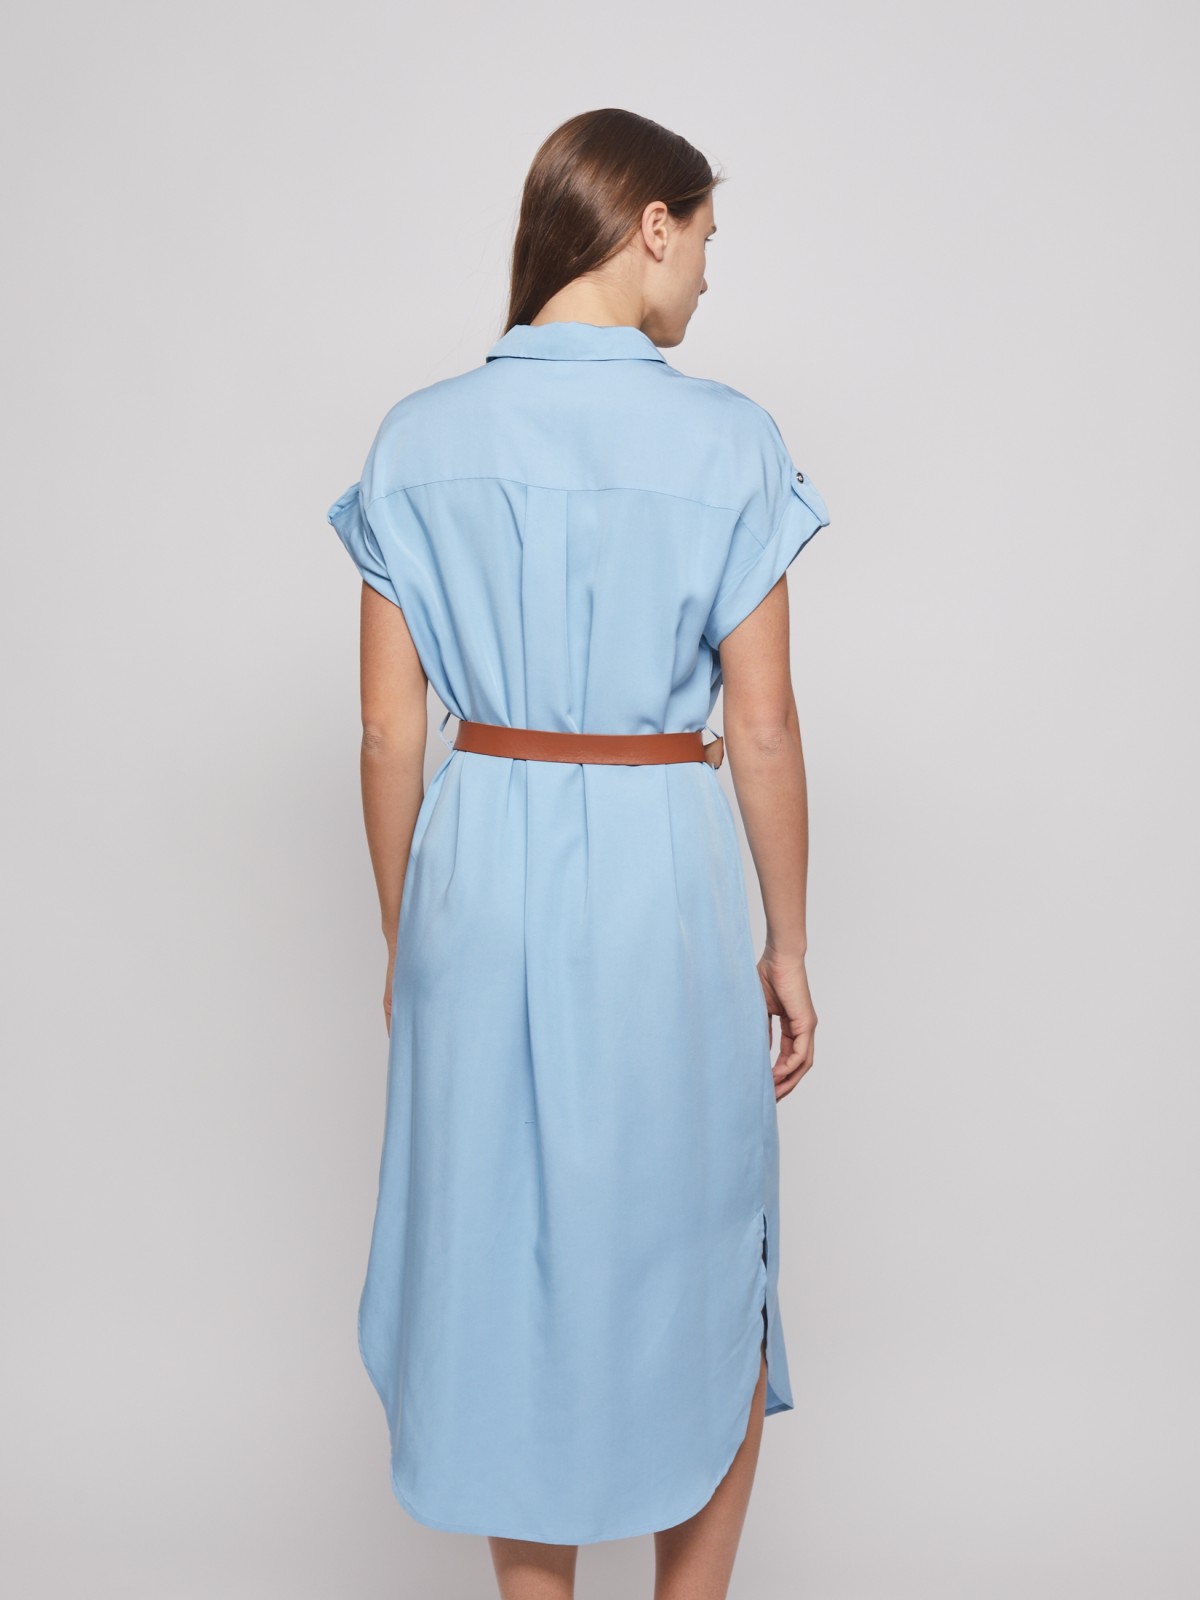 Платье-рубашка с ремнём zolla 022238259043, цвет светло-голубой, размер S - фото 6